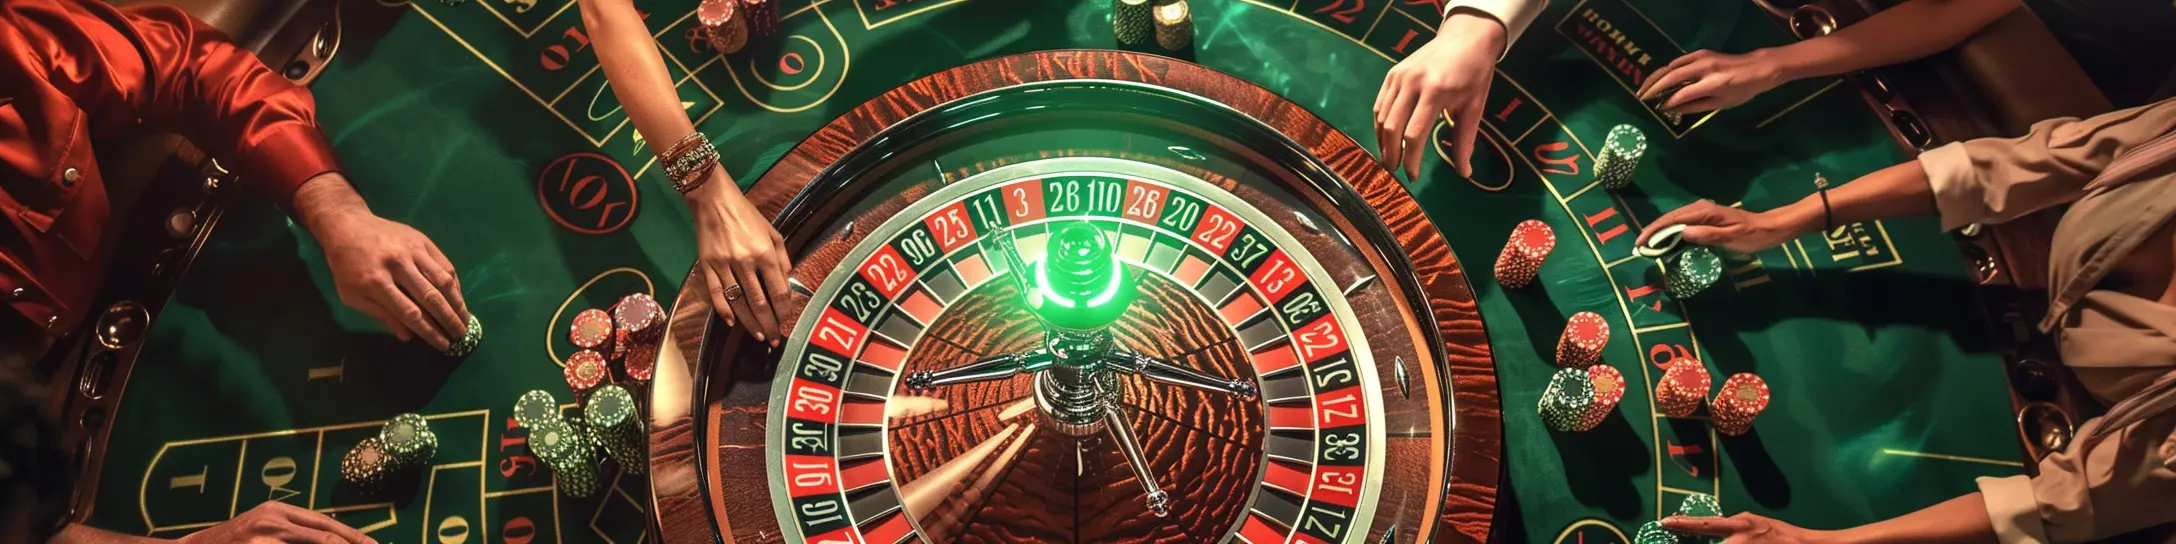 joueurs jouant à la roulette au casino